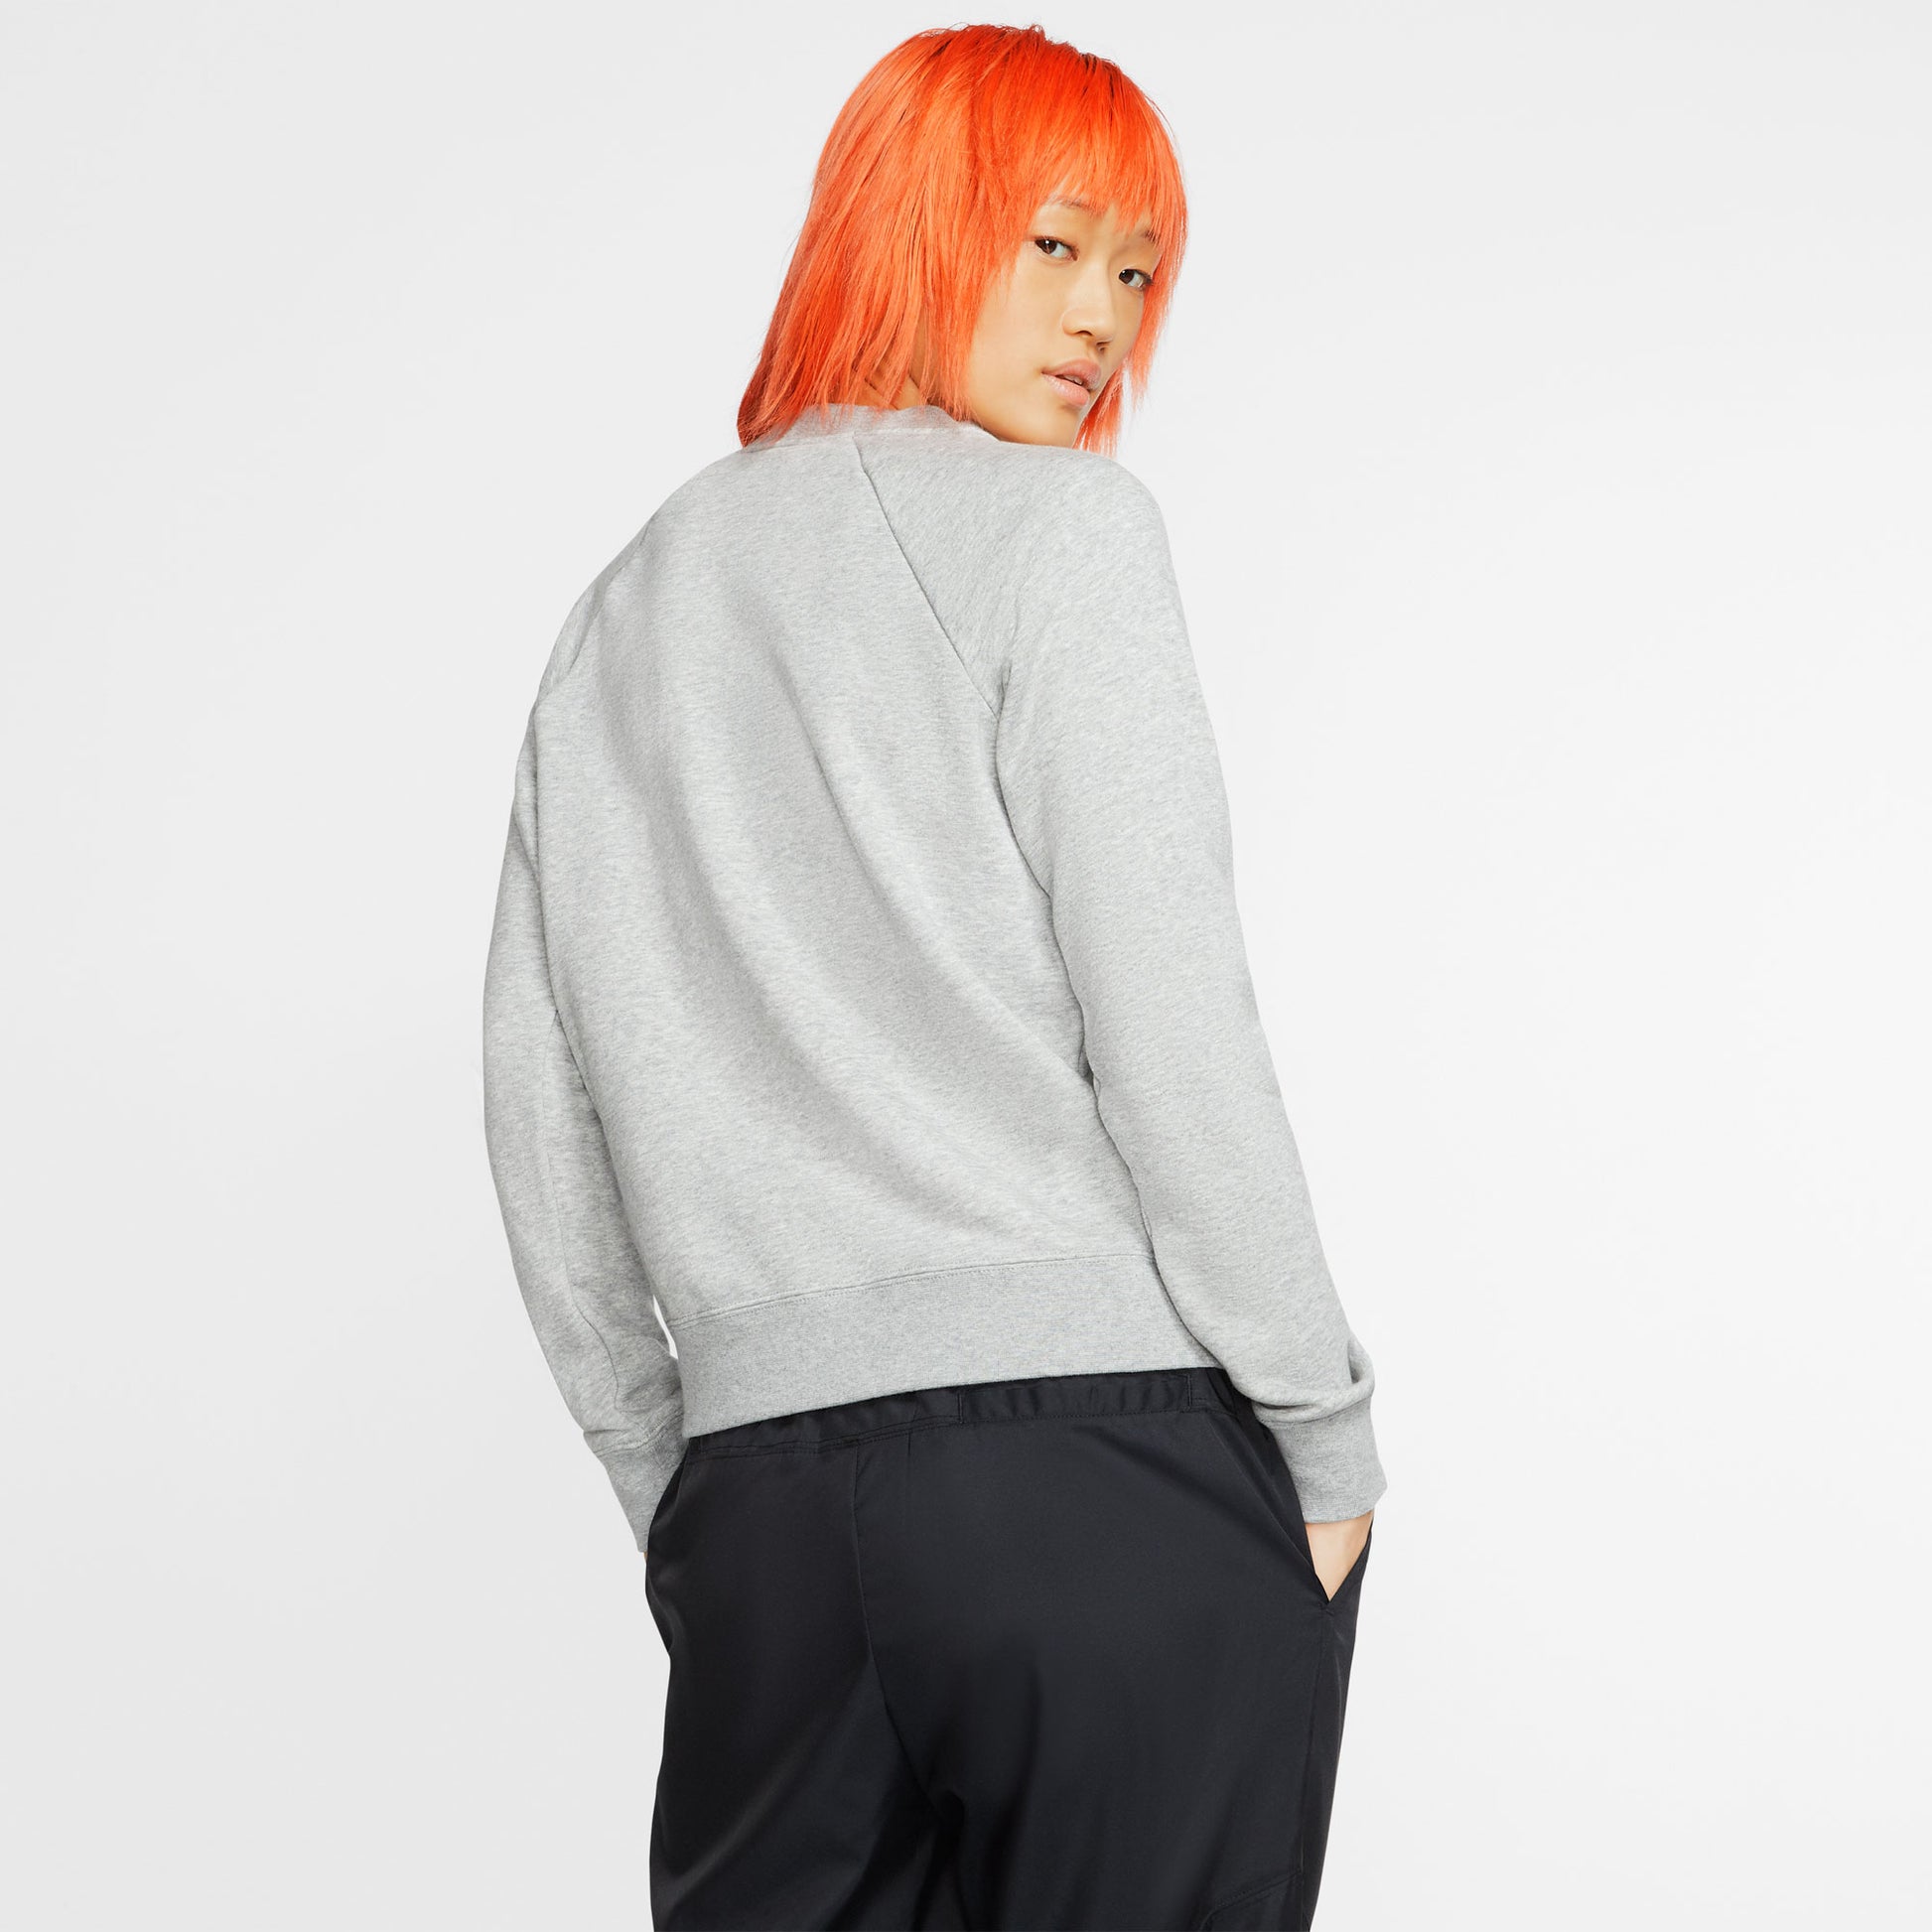 Nike Essential Women's Swoosh Fleece Crew Sweater Grey (2)